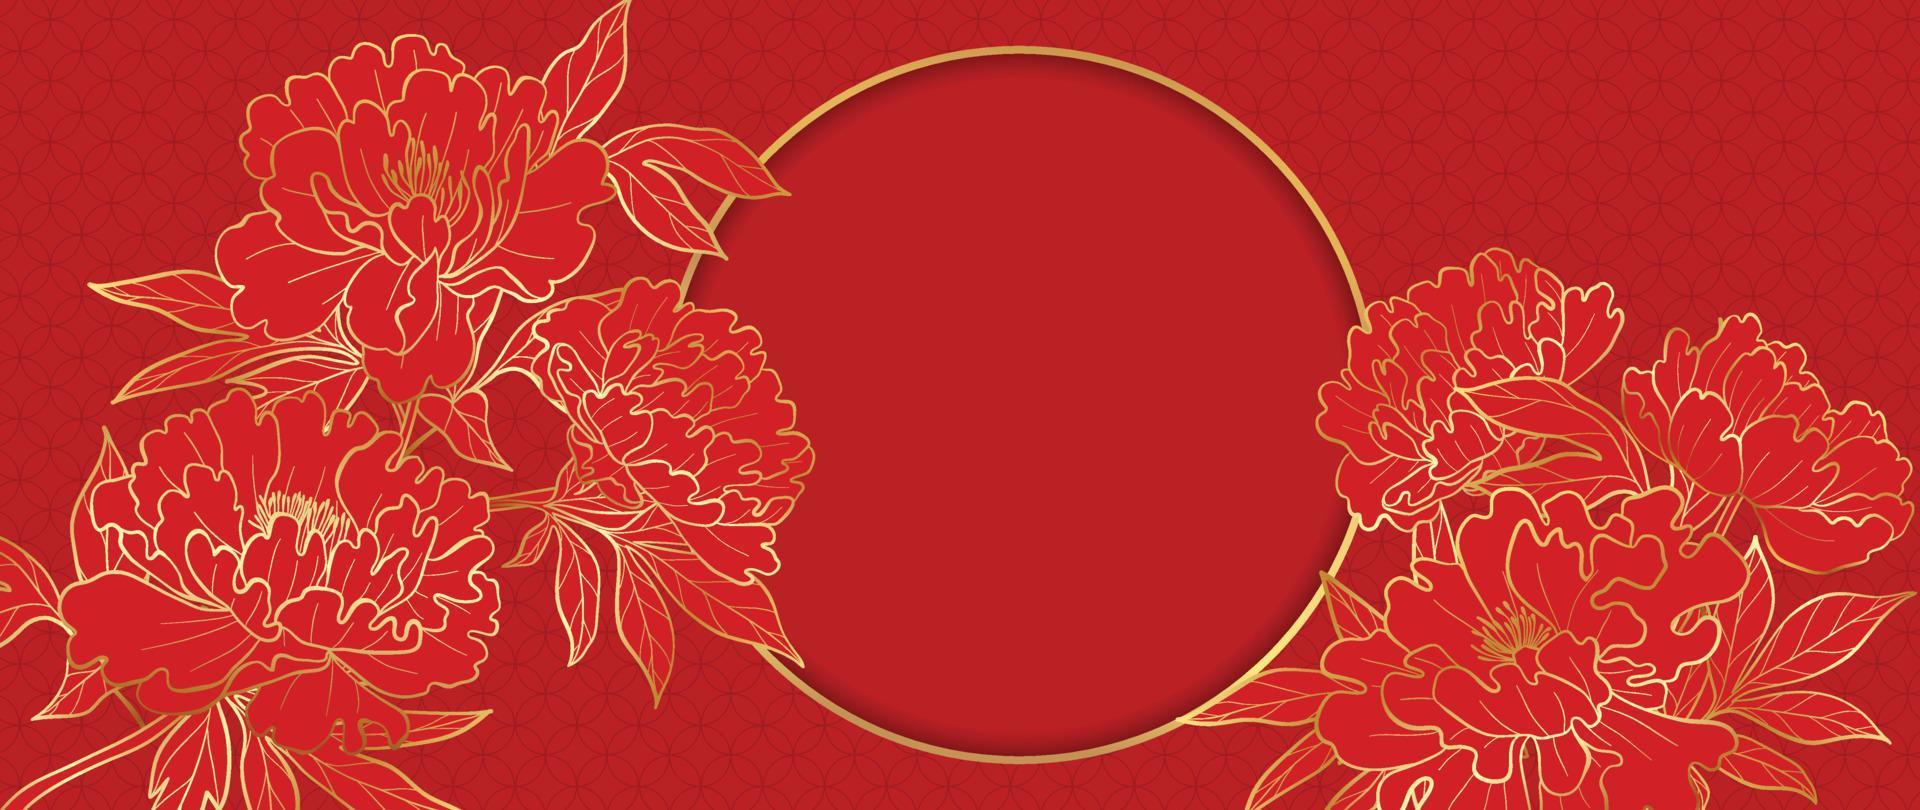 vector de fondo de patrón de estilo de lujo de feliz año nuevo chino. arte de línea dorada de flor de peonía y marco de círculo sobre fondo rojo. ilustración de diseño para papel tapiz, tarjeta, afiche, empaque, publicidad.